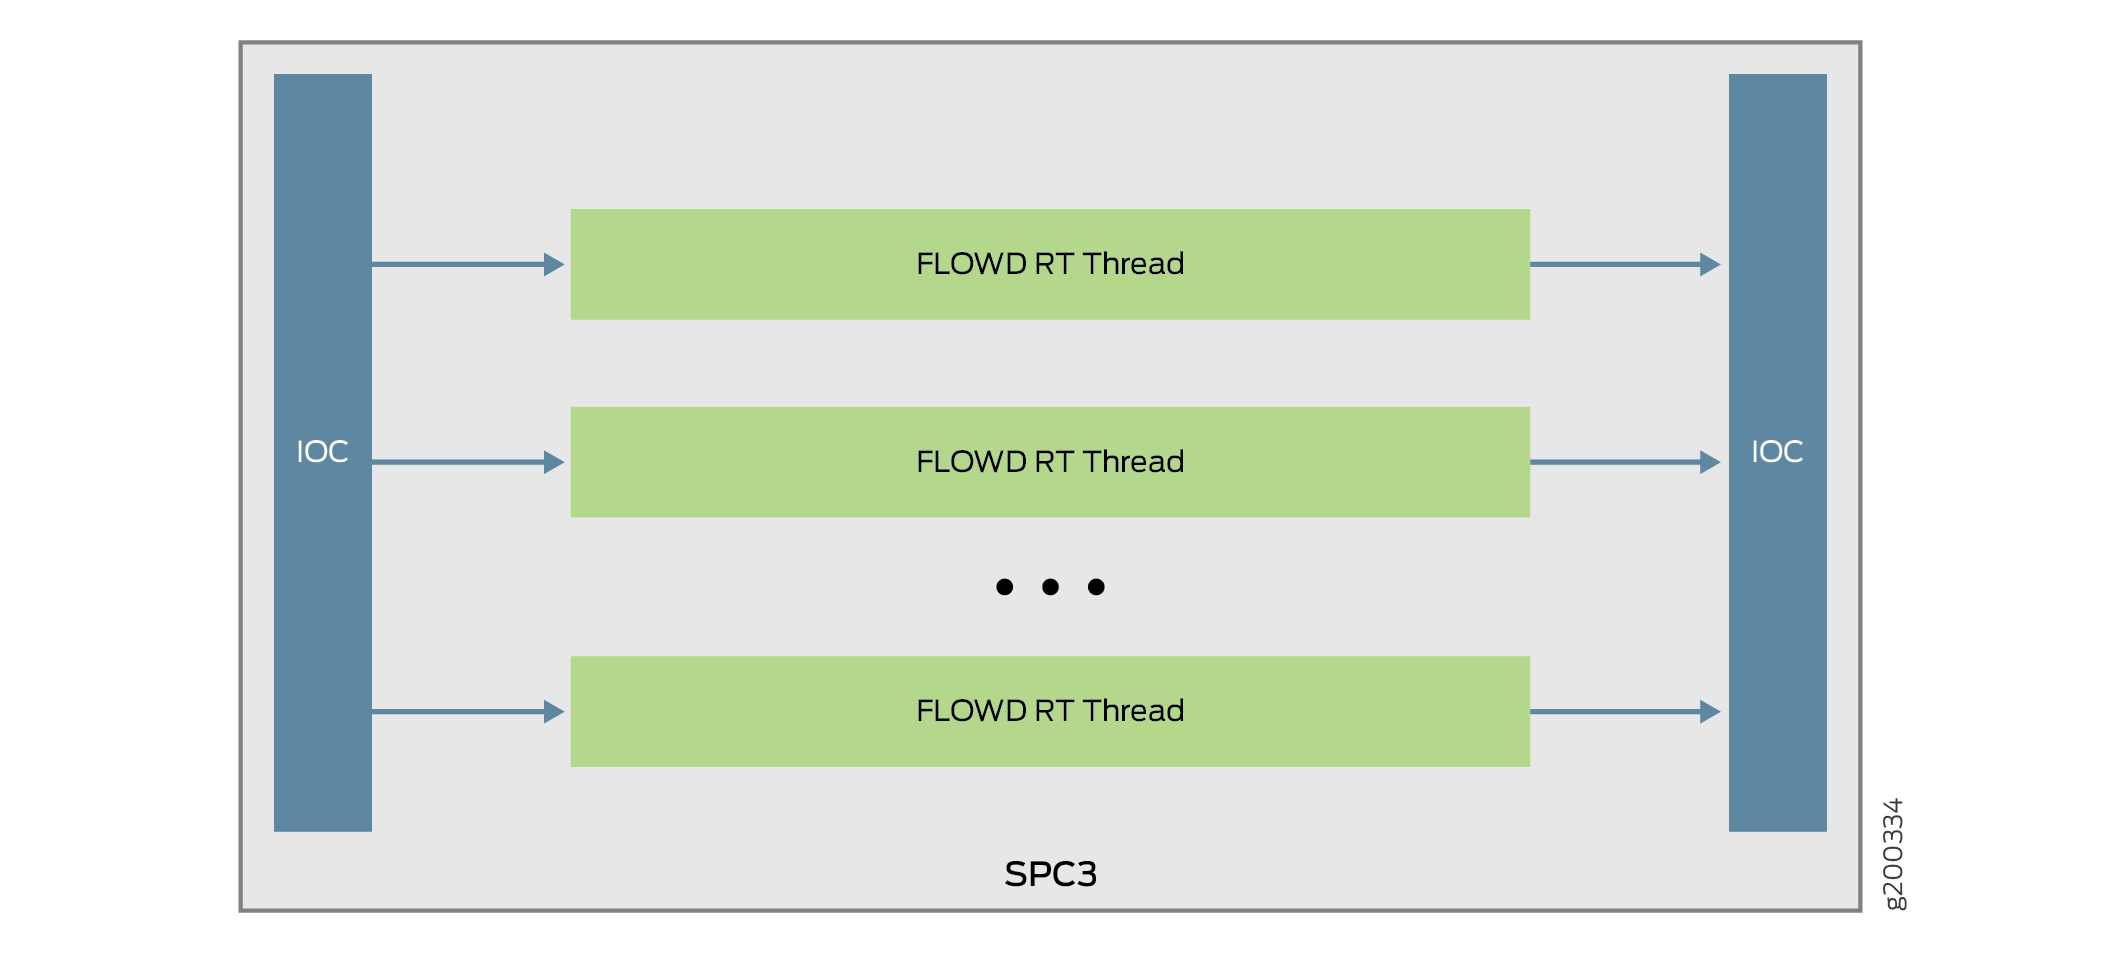 Packet flow through flowd thread